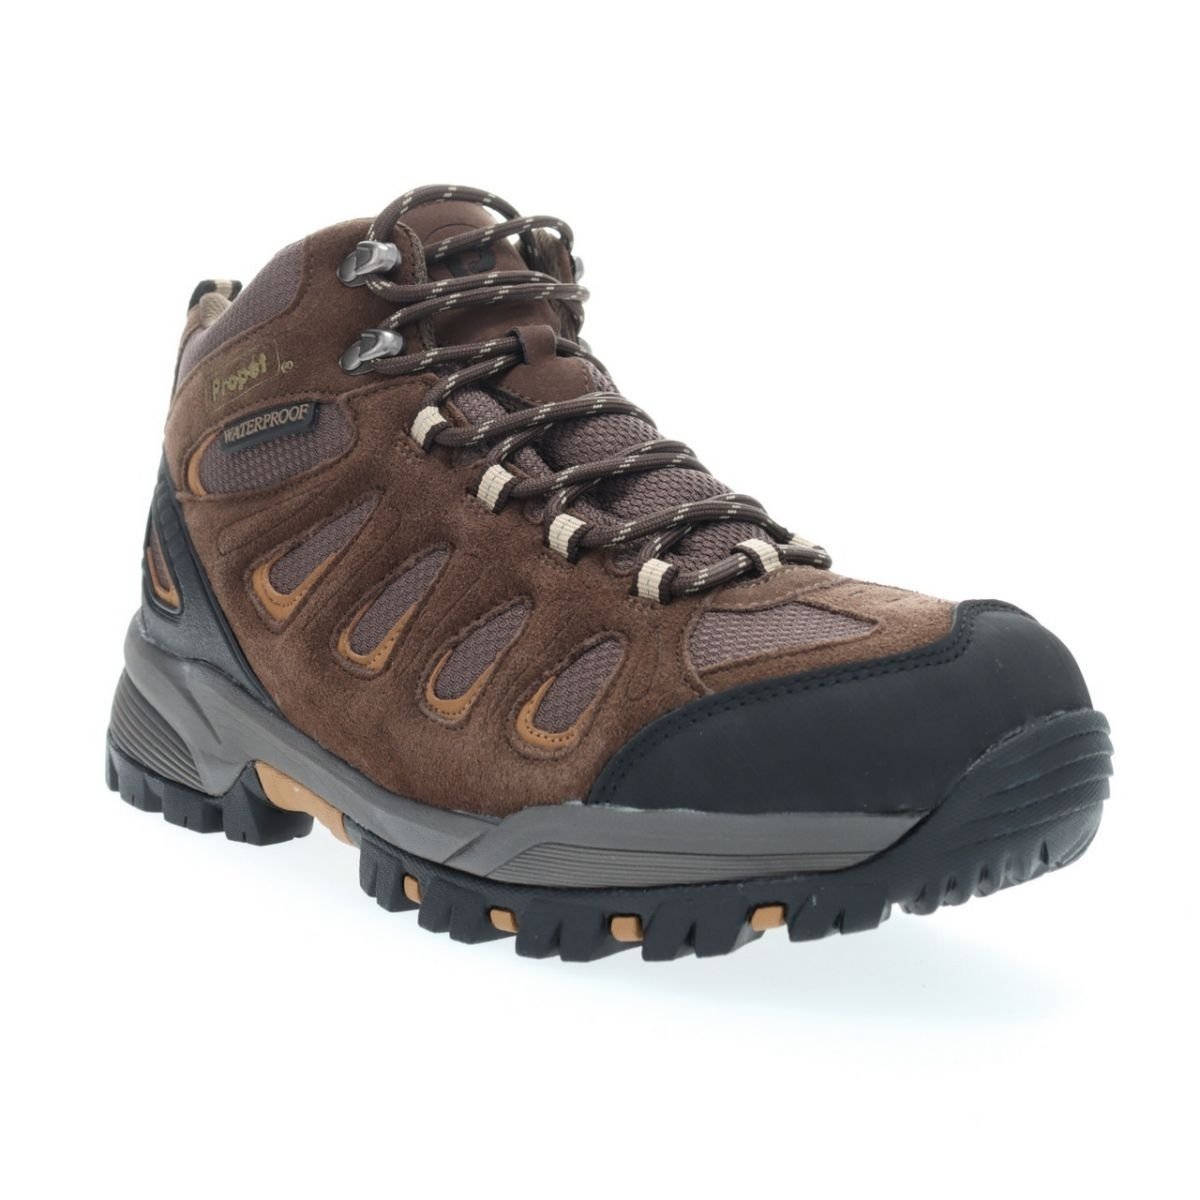 Propet Men's Ridge Walker Hiking Boot Brown - M3599BR 8 XX US Men BROWN - BROWN, 13 WIDE